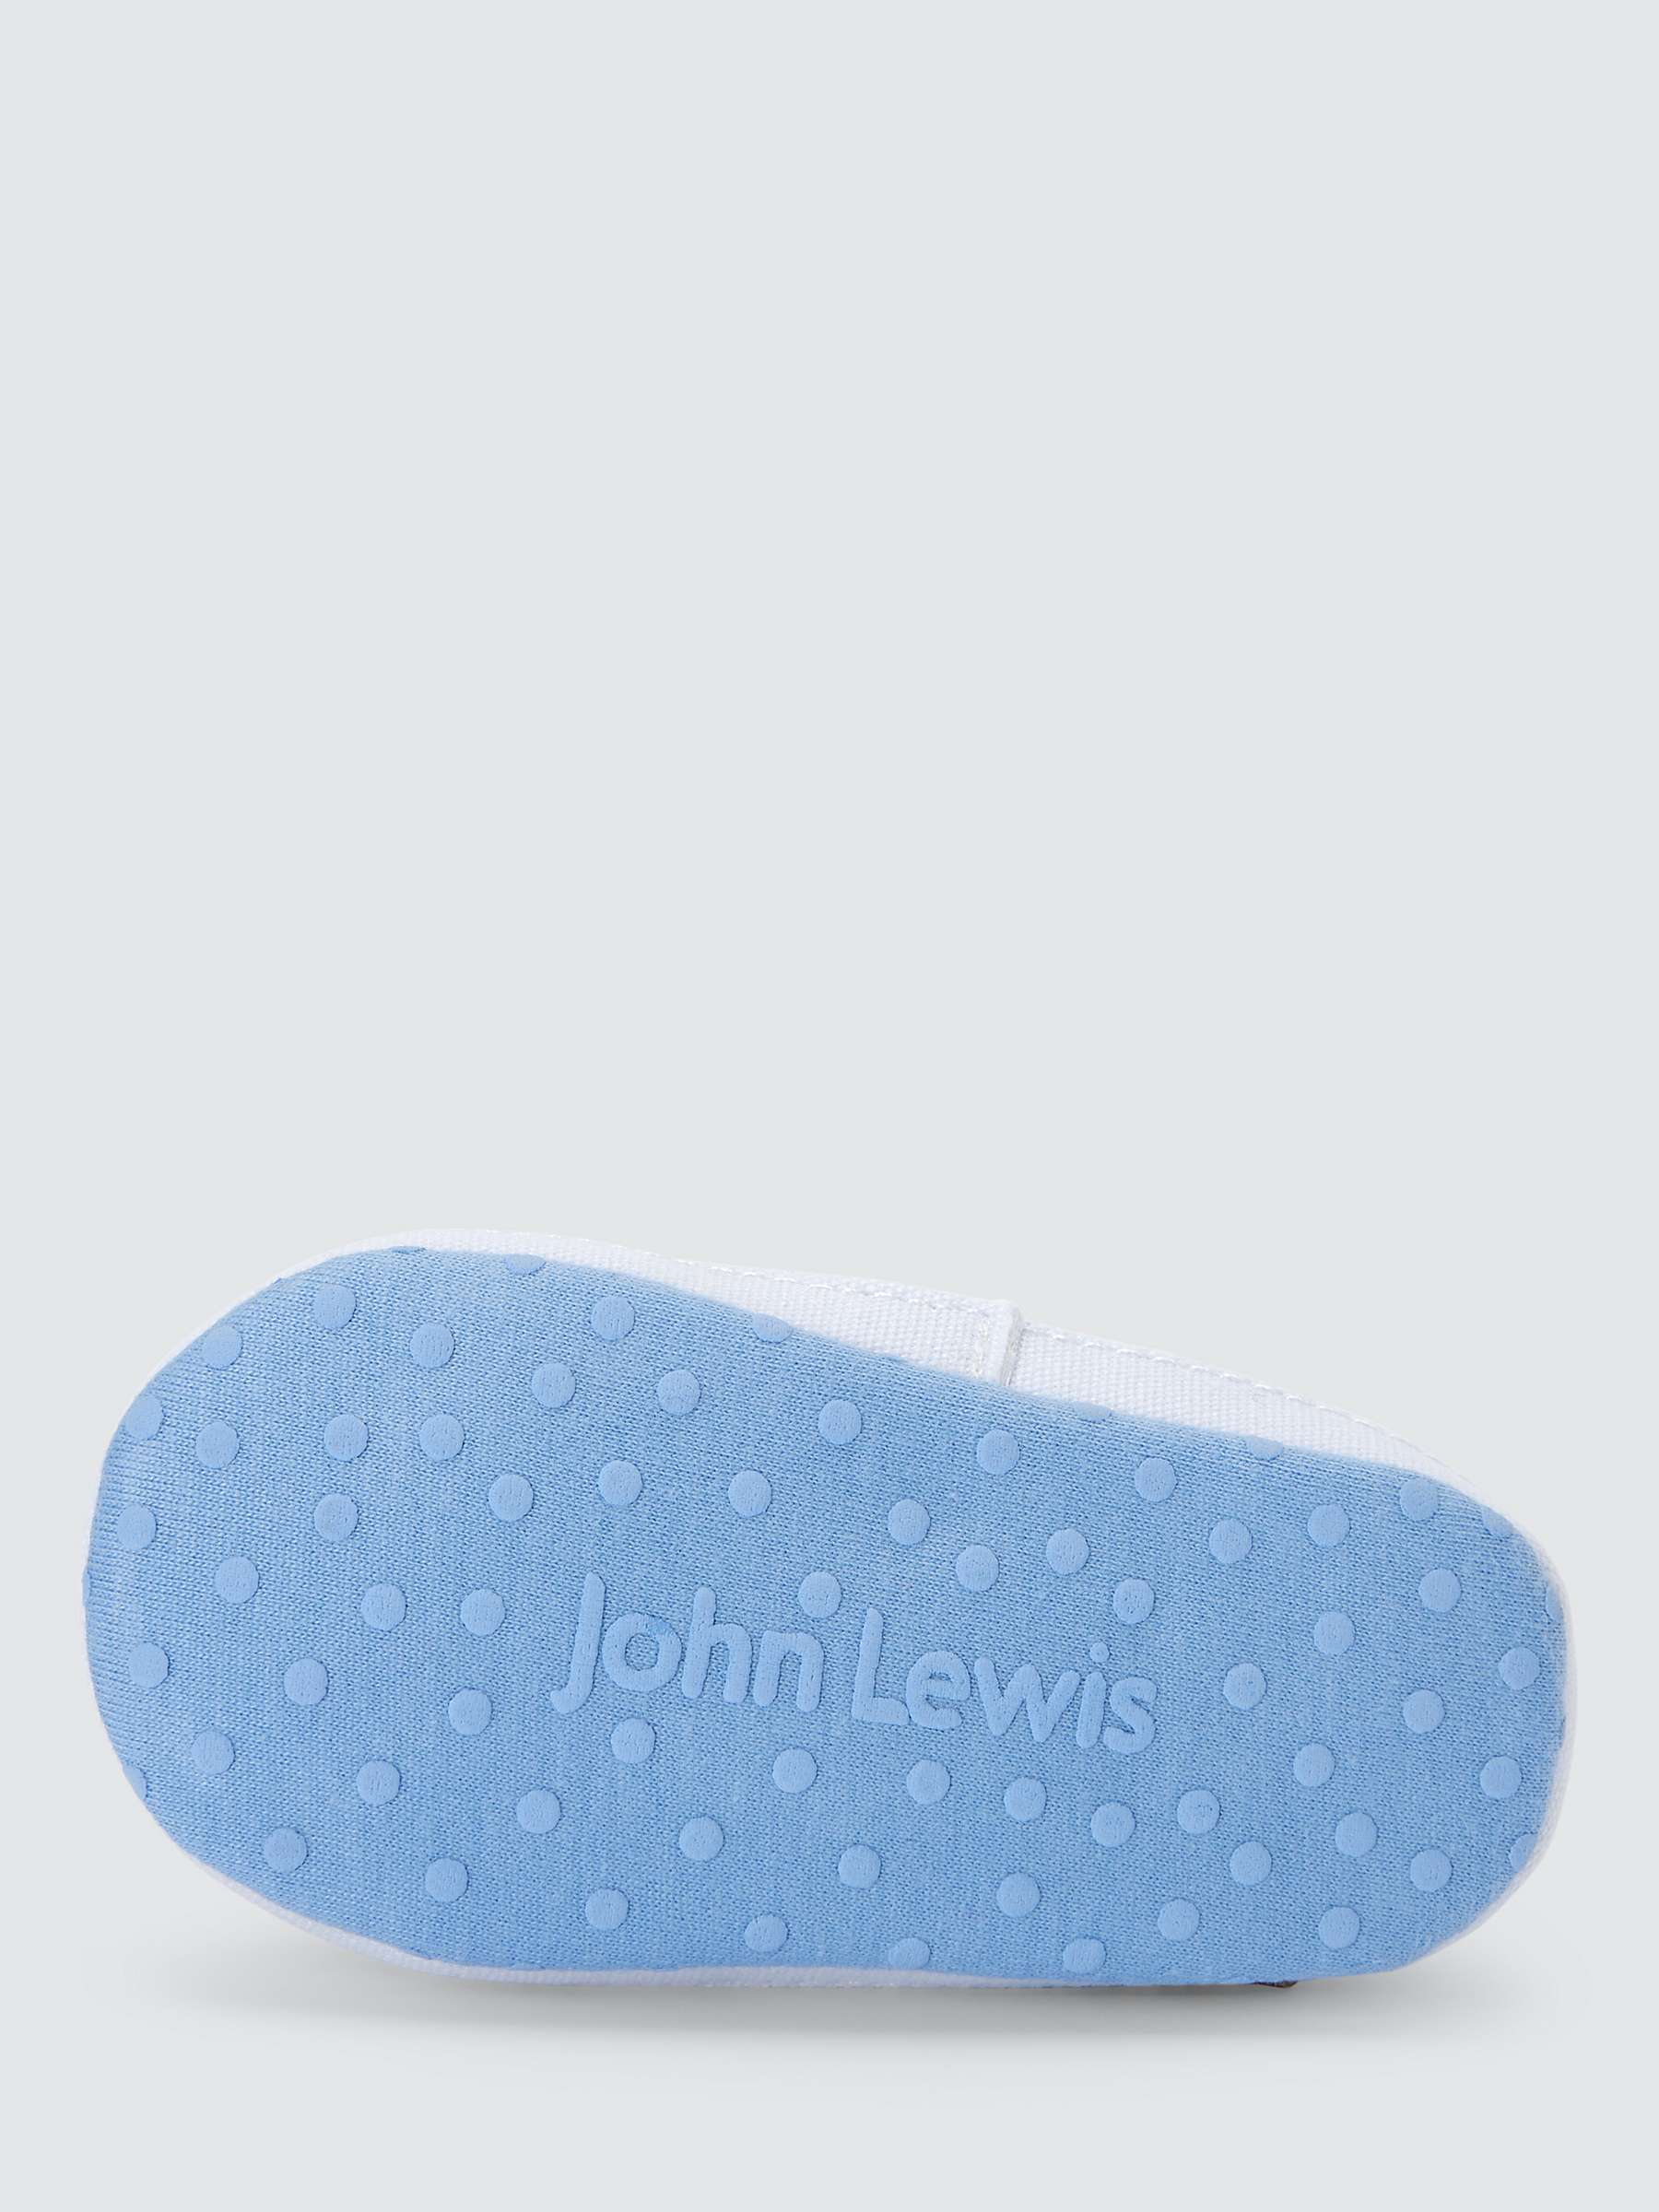 Buy John Lewis Baby Swan T Bar Pram Shoes, Blue/Multi Online at johnlewis.com